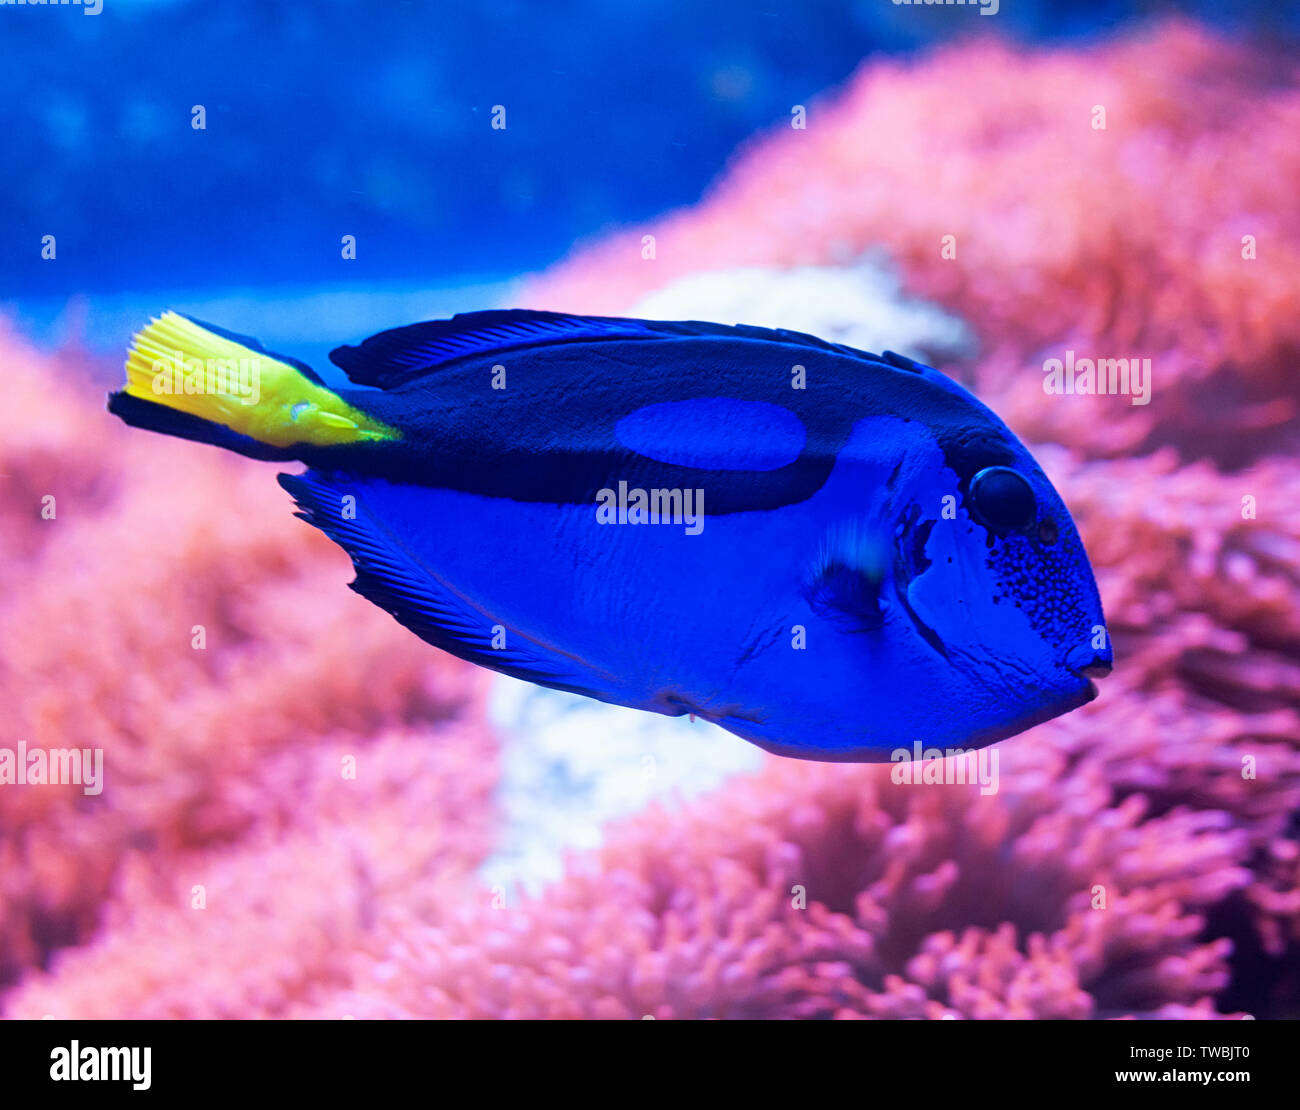 Nahaufnahme von einem blauen tang Doktorfische, beliebte tropische Aquarium pet, exotische Fische aus dem Pazifischen Ozean. Stockfoto